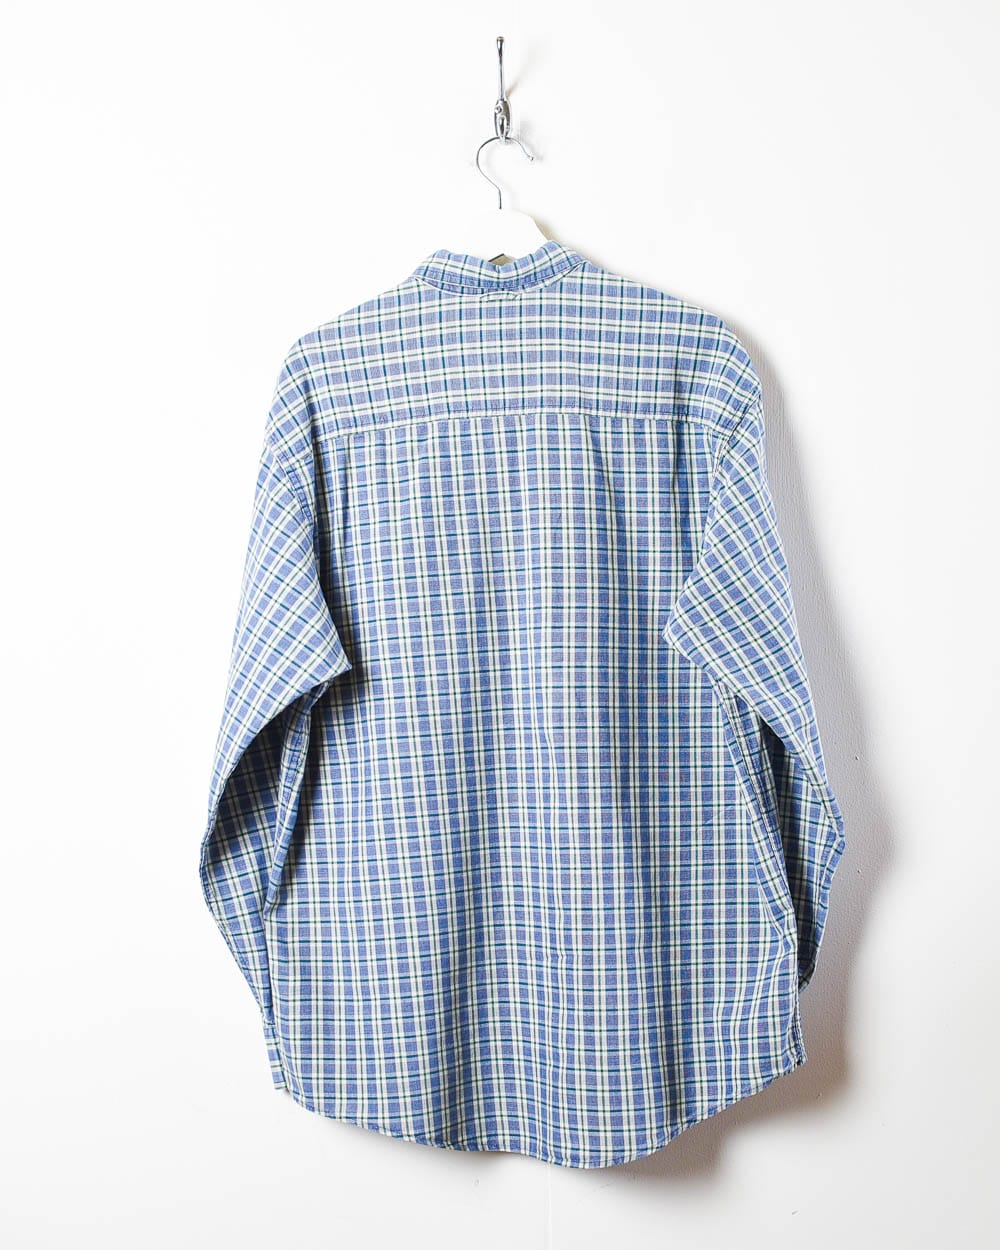 Blue Timberland Denimwear Checked Shirt - Medium